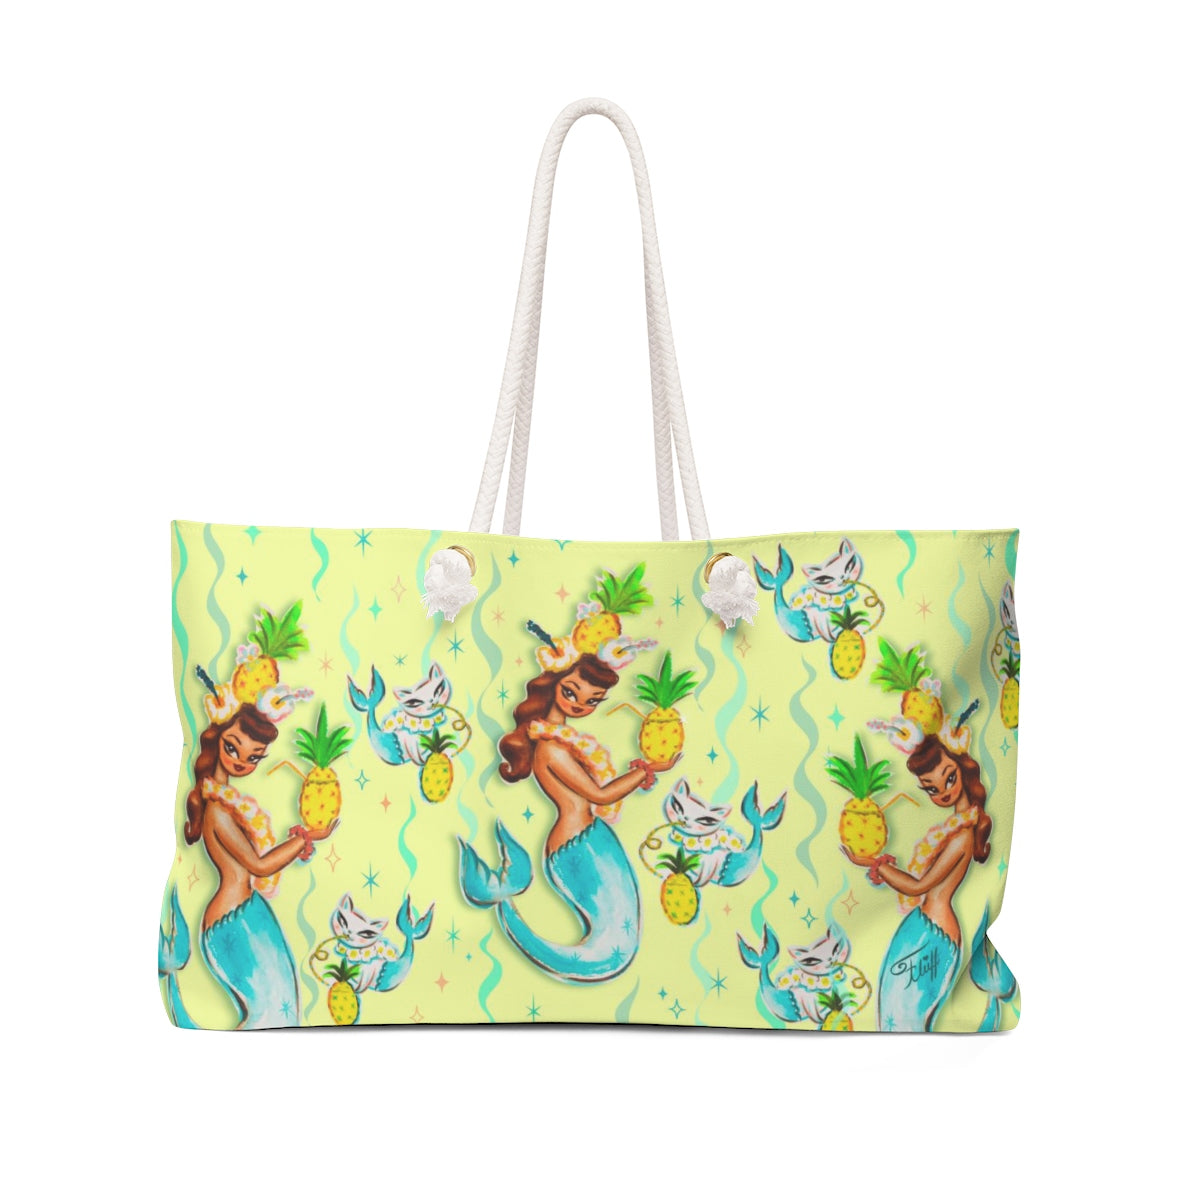 Tropical Pineapple Mermaid with Merkitties  • Weekender Bag